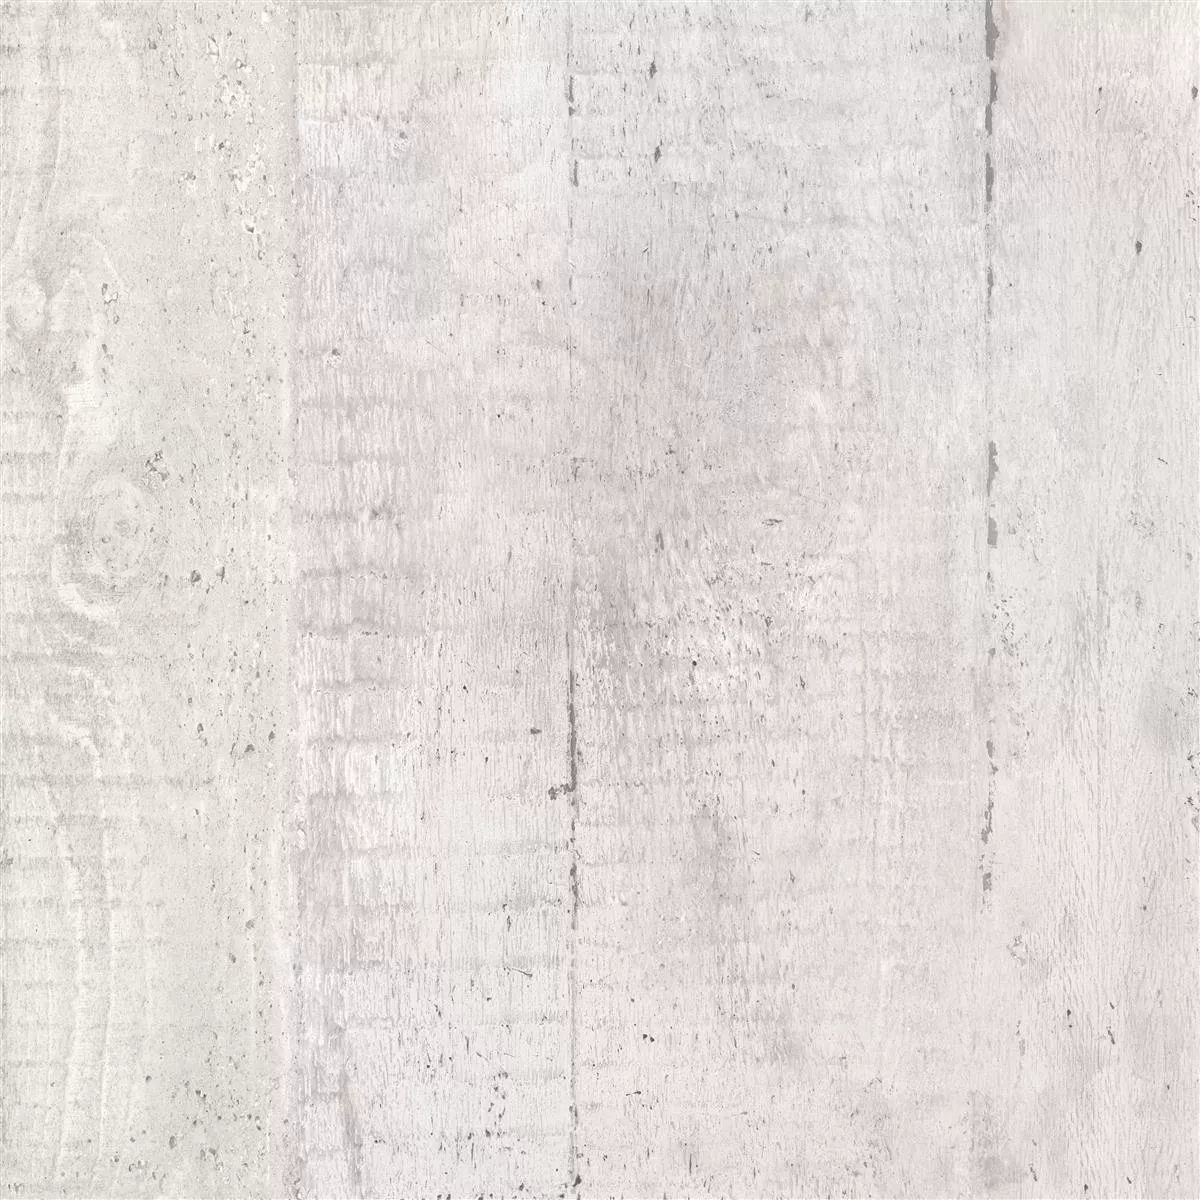 Podlahové Dlaždice Gorki Dřevěný Vzhled 60x60cm Glazovaný Bílá